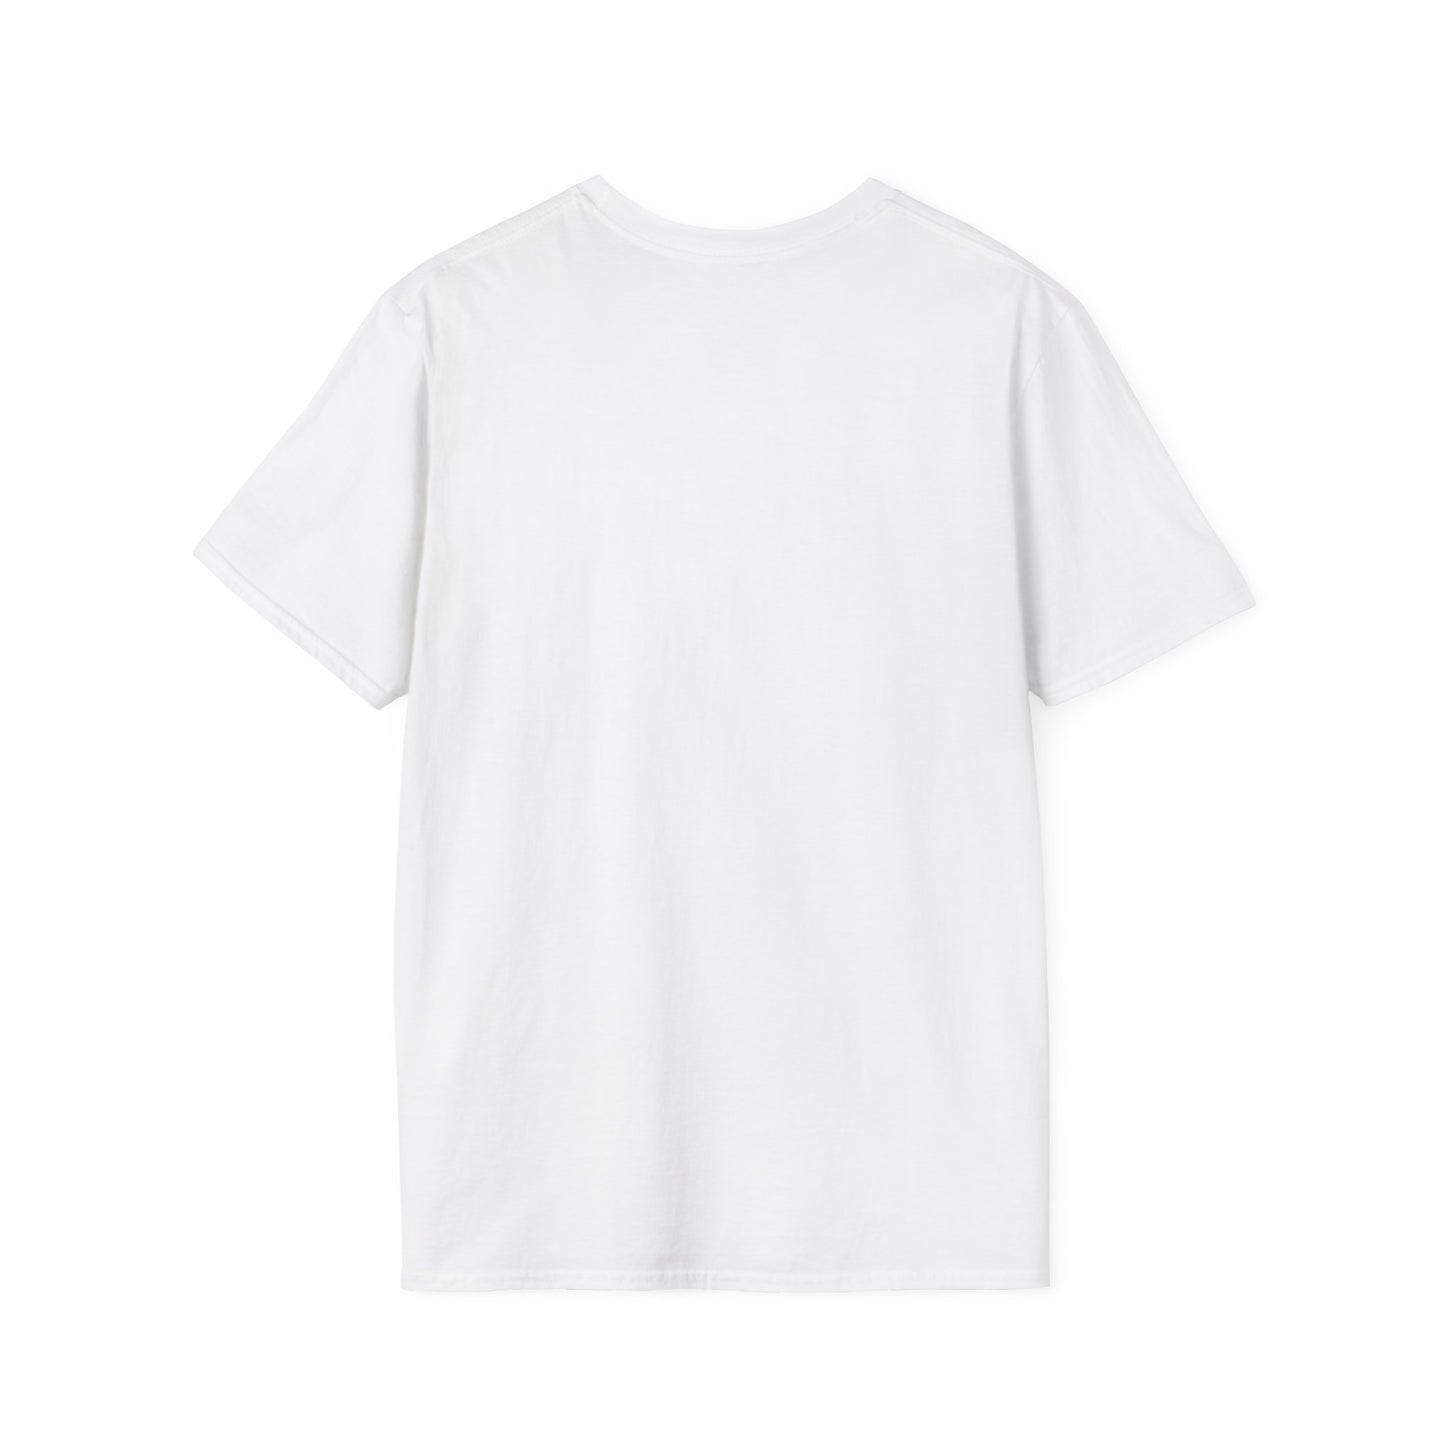 LCAM-12 Unisex Softstyle T-Shirt